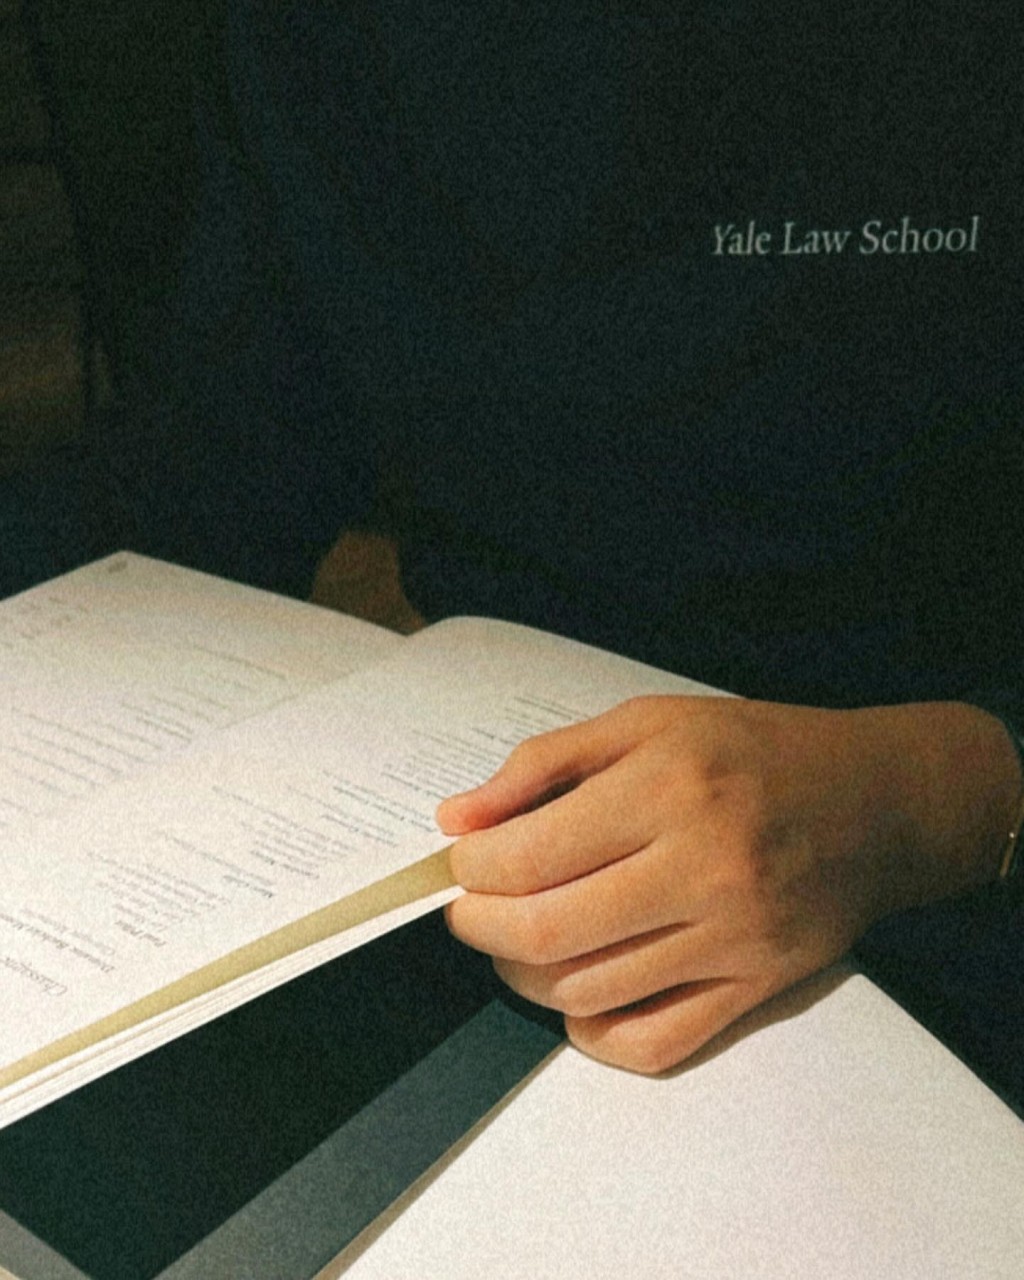 該名男子名為Jacob Chan，其中一張相可見穿了印有「Yale Law School」，莫非畢業於耶魯法學院？